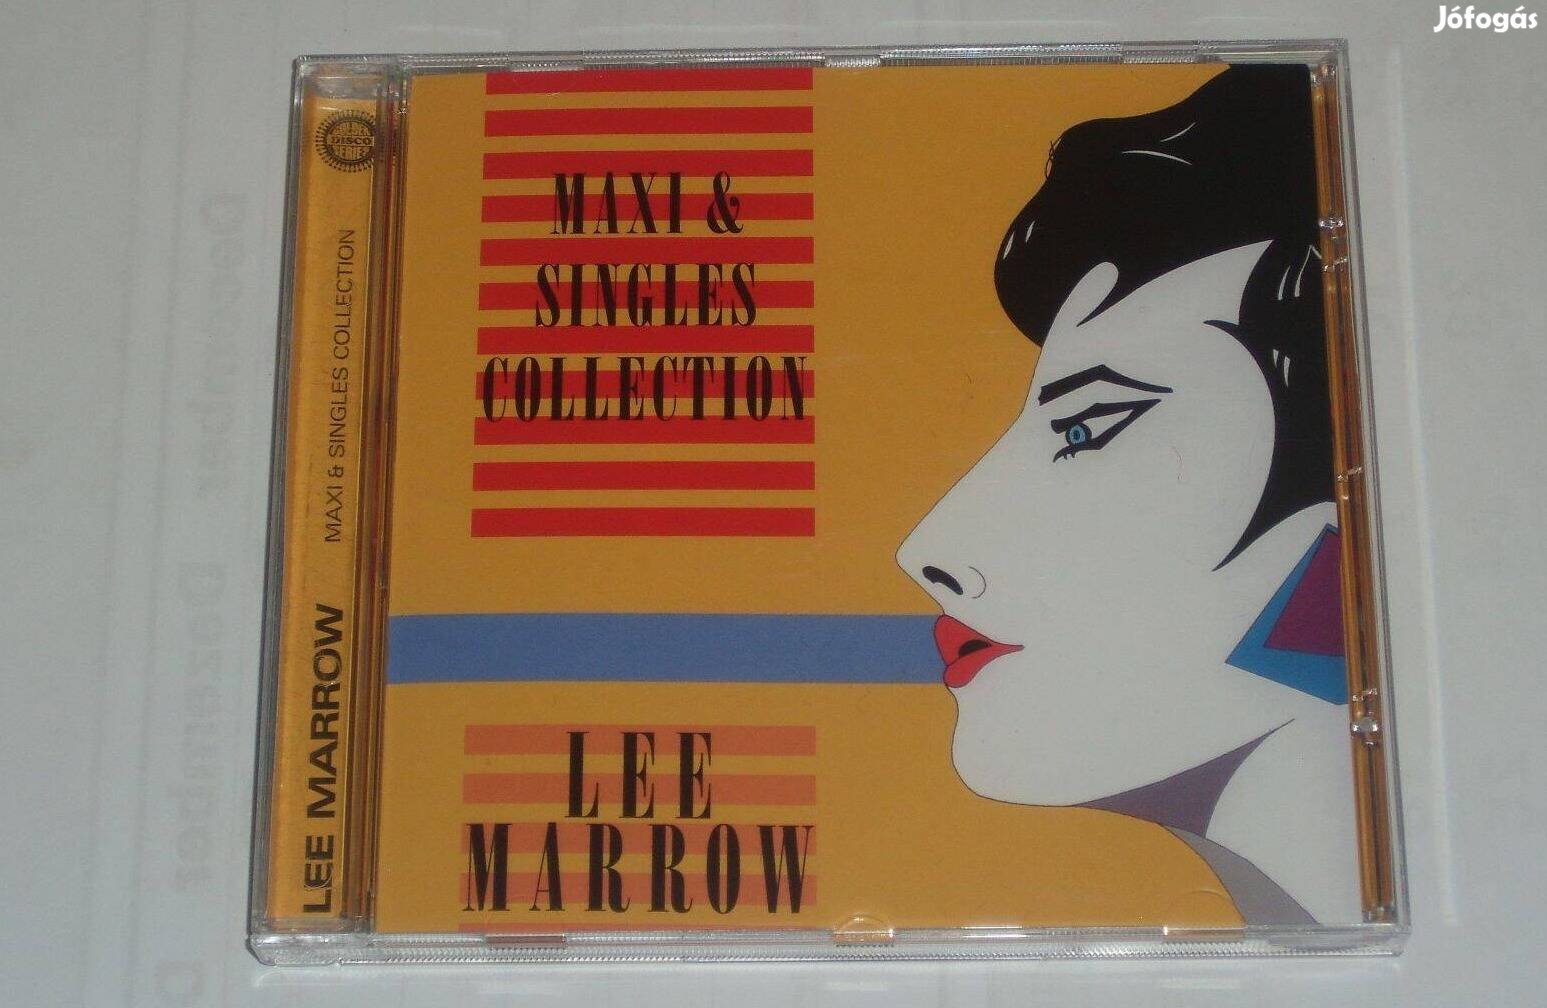 Lee Marrow - Maxi & Singles Collection CD Italo- Disco